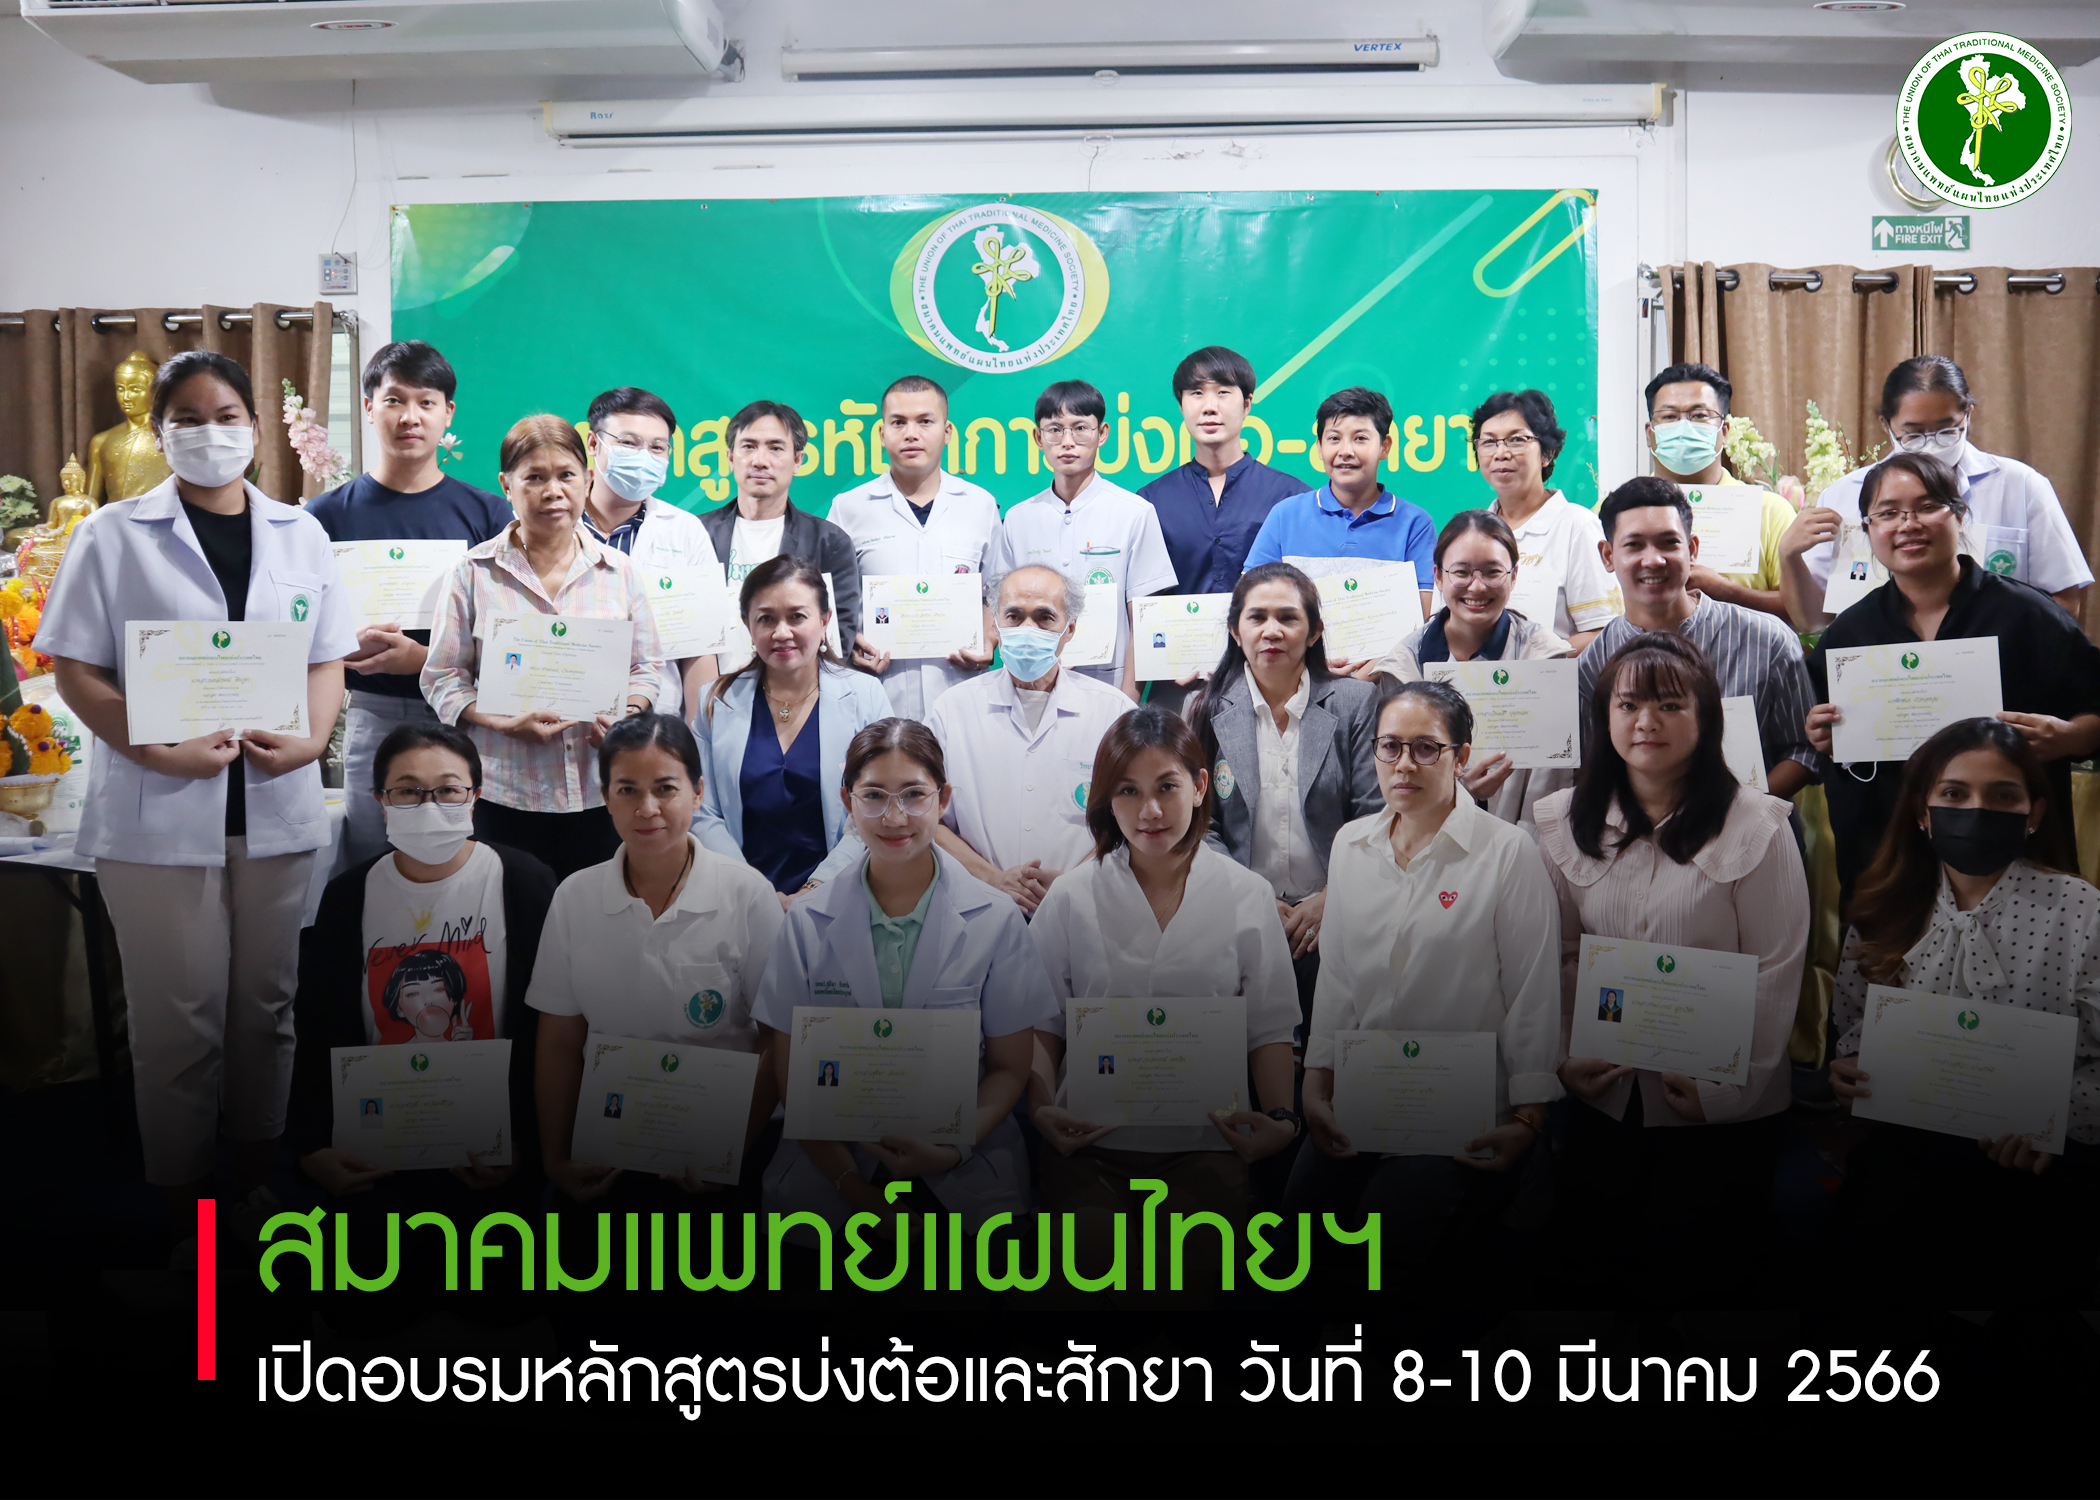 สมาคมแพทย์แผนไทยแห่งประเทศไทย ได้เปิดอบรมโครงการพิเศษหลักสูตรบ่งต้อและสักยา